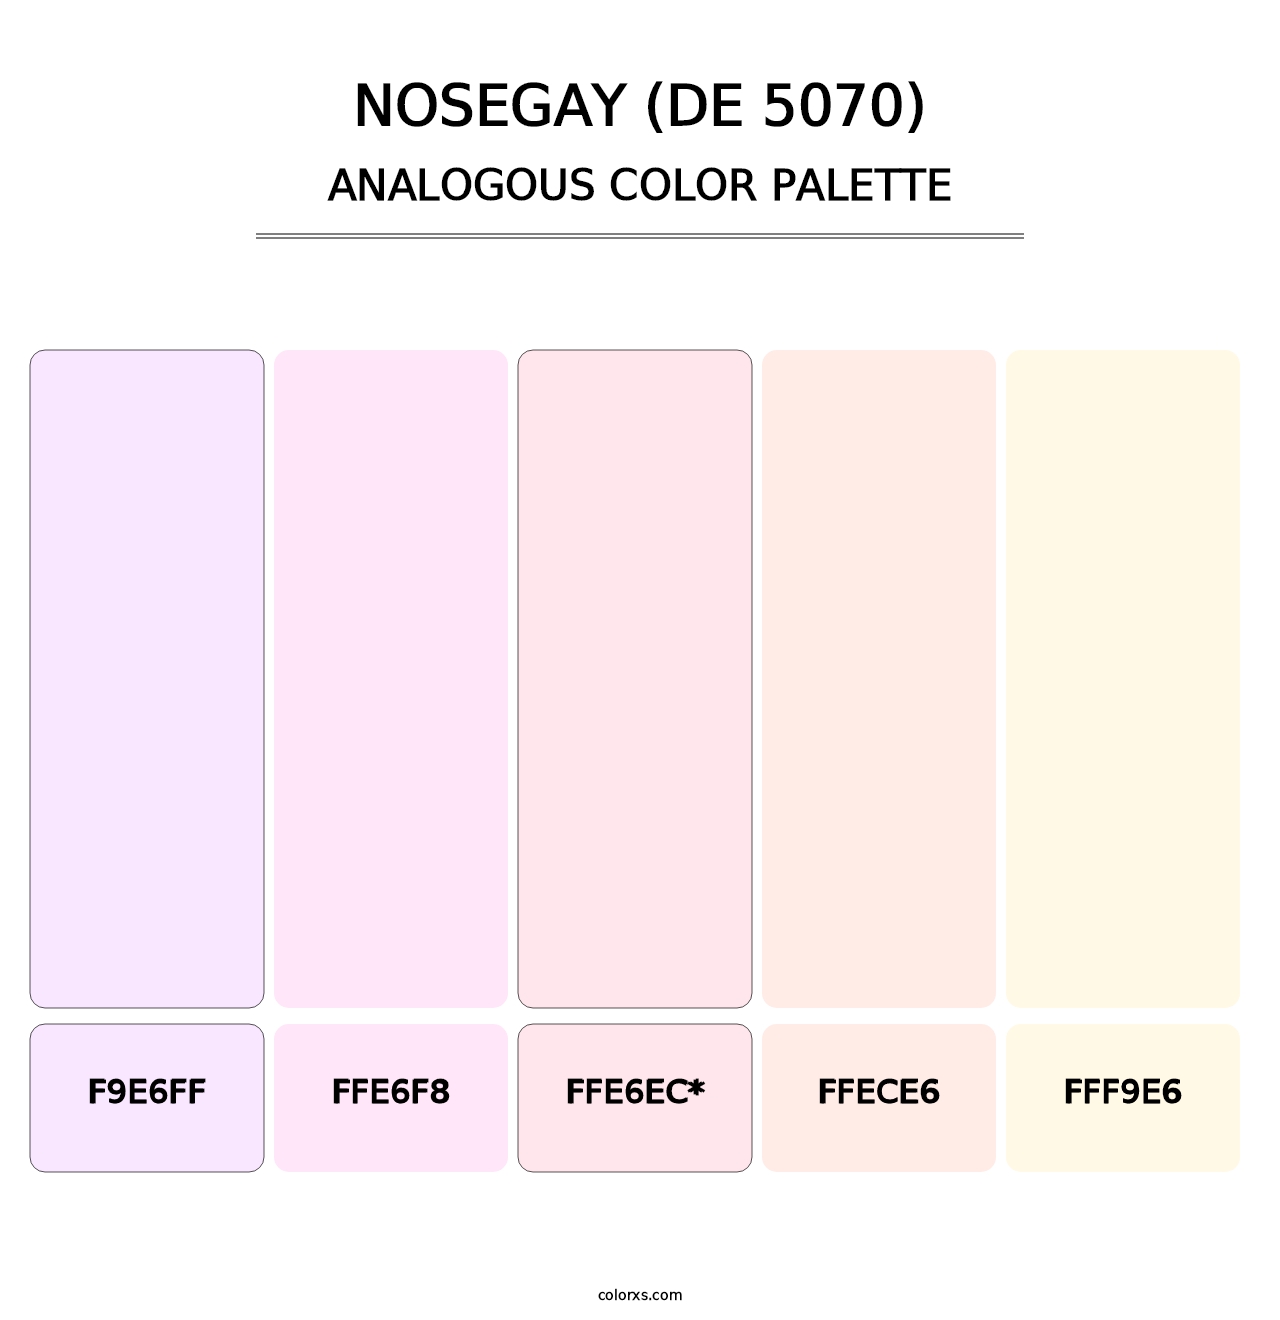 Nosegay (DE 5070) - Analogous Color Palette